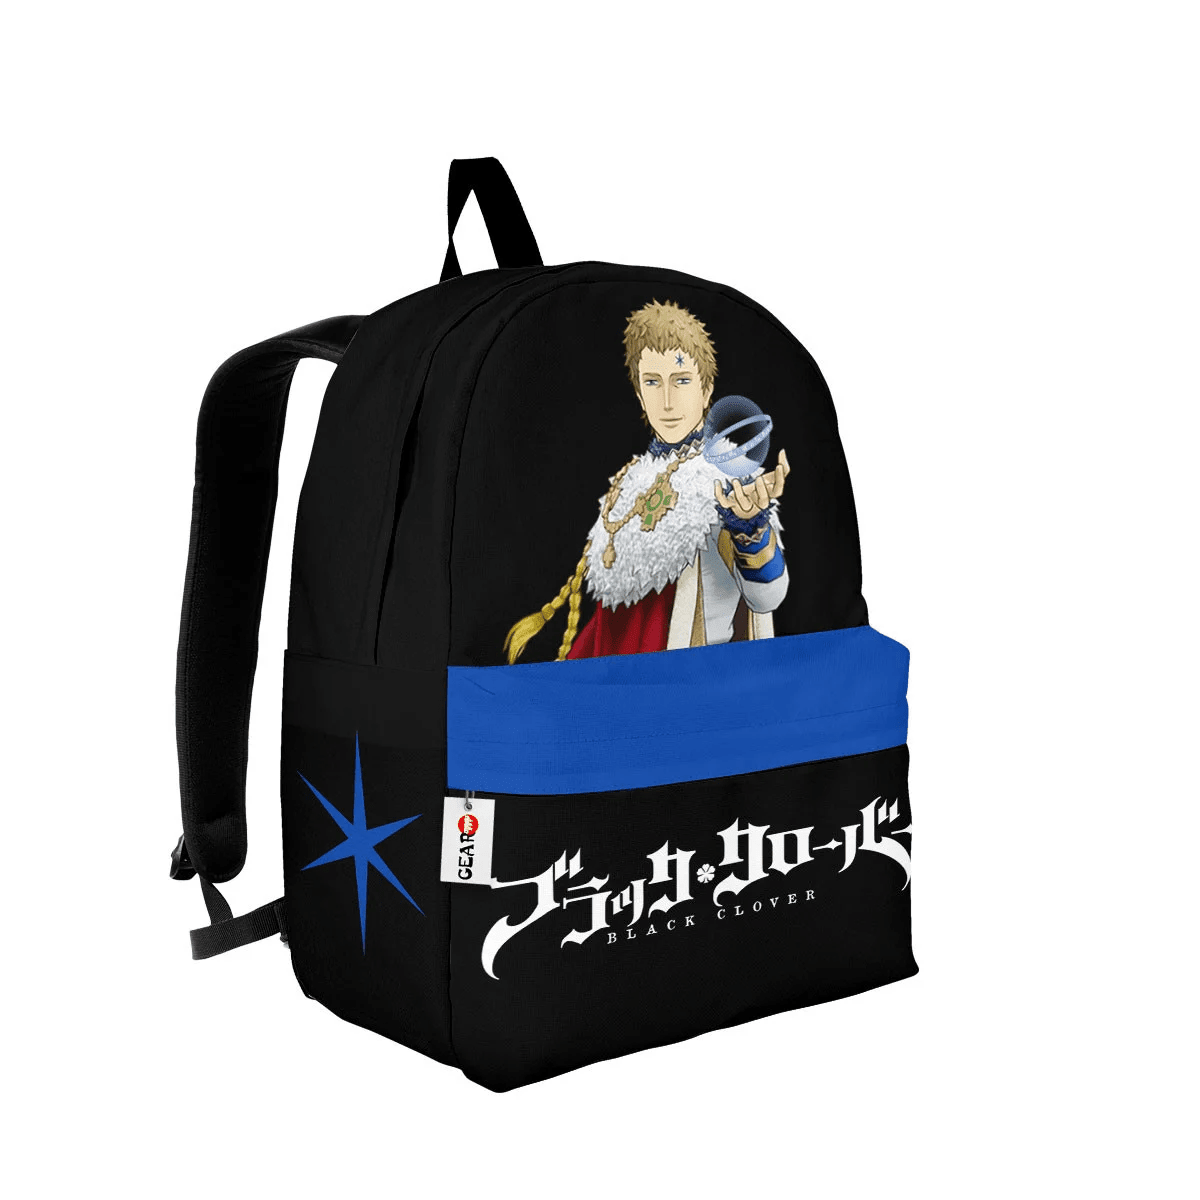 Julius Novachrono Backpack Custom Black Clover Anime Bag For Fans